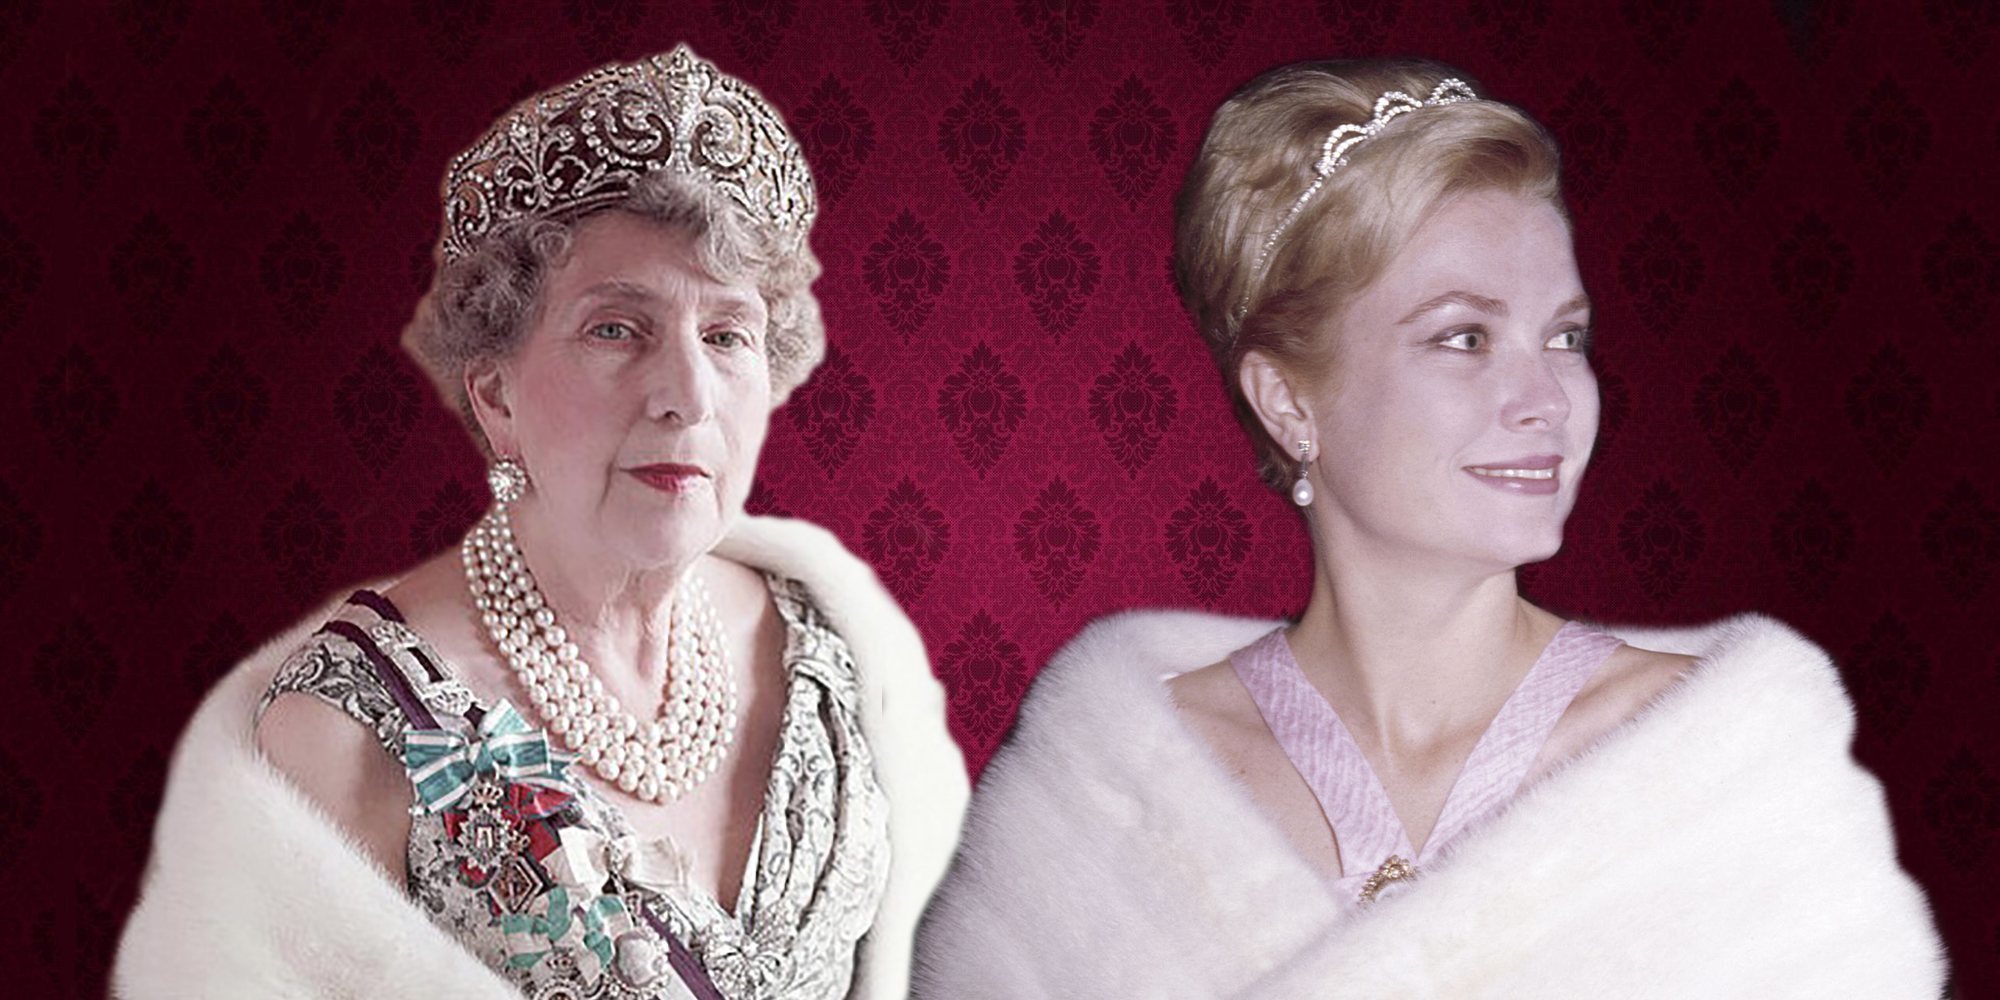 La Reina Victoria Eugenia y Grace de Mónaco: una amistad real marcada por el interés común